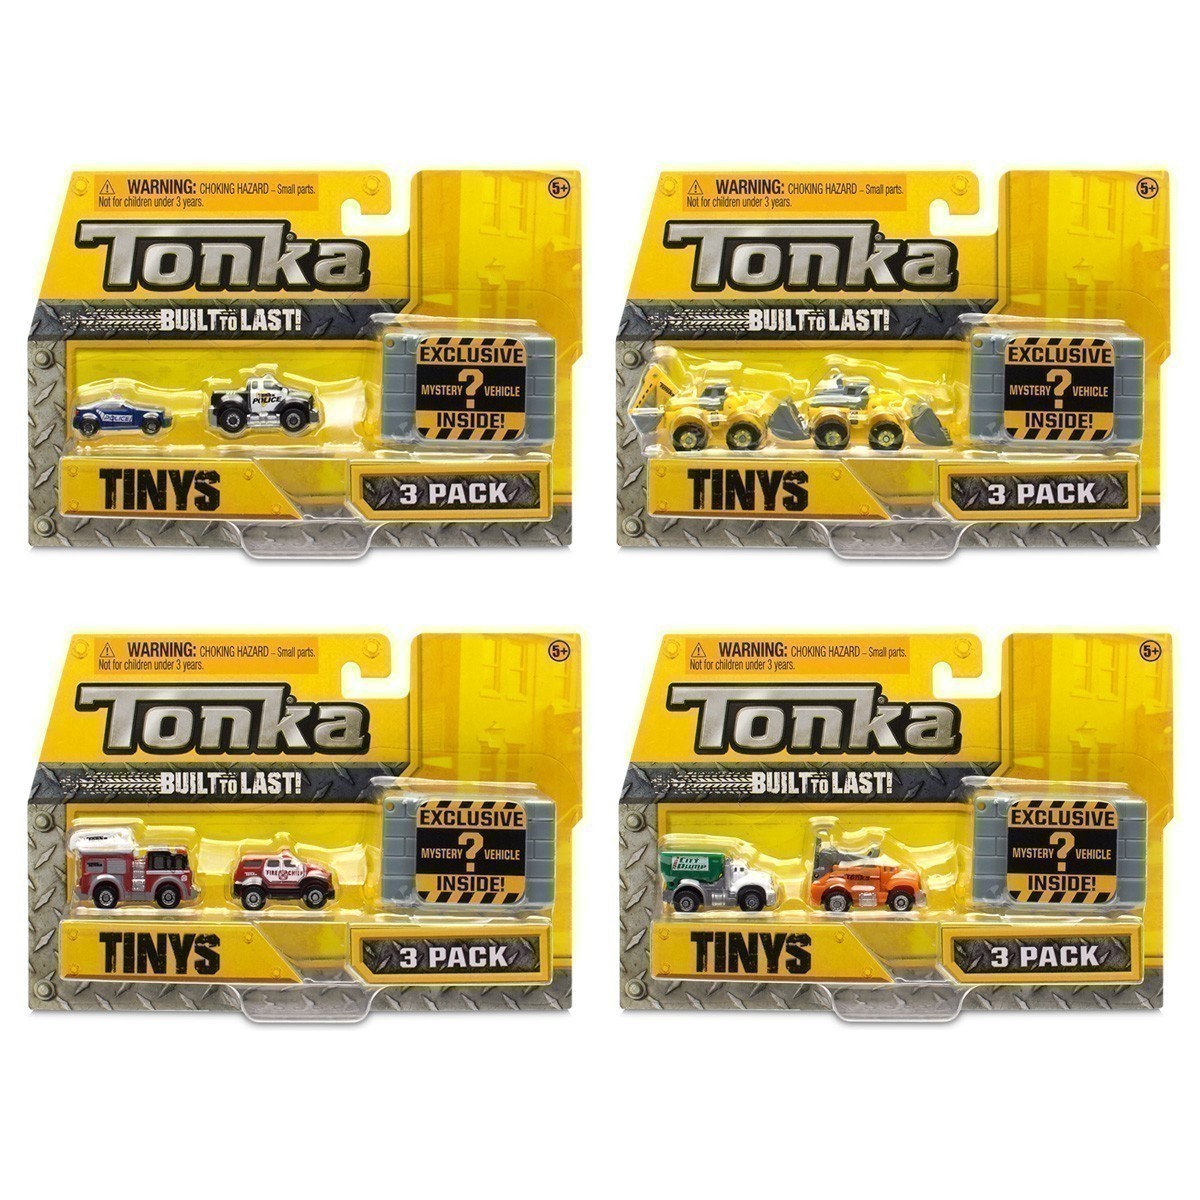 Tonka - Tinys 3-Pack Assortment